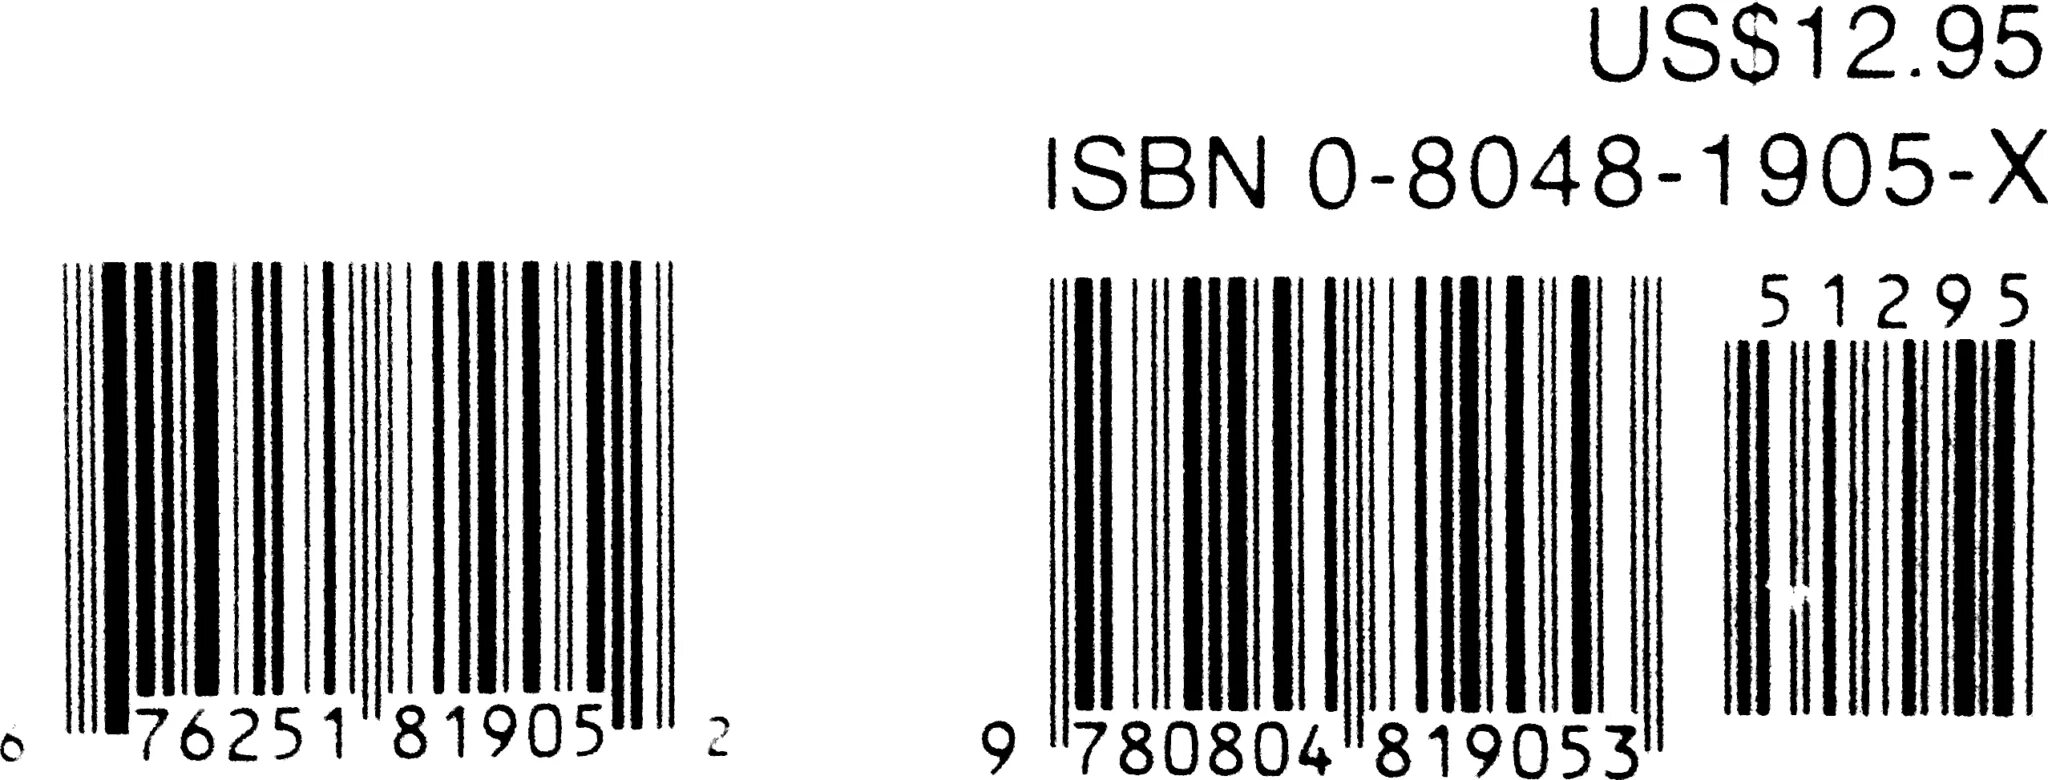 Штрих код. Штрих код ISBN. Штрихкод книги. Книжный штрих код.